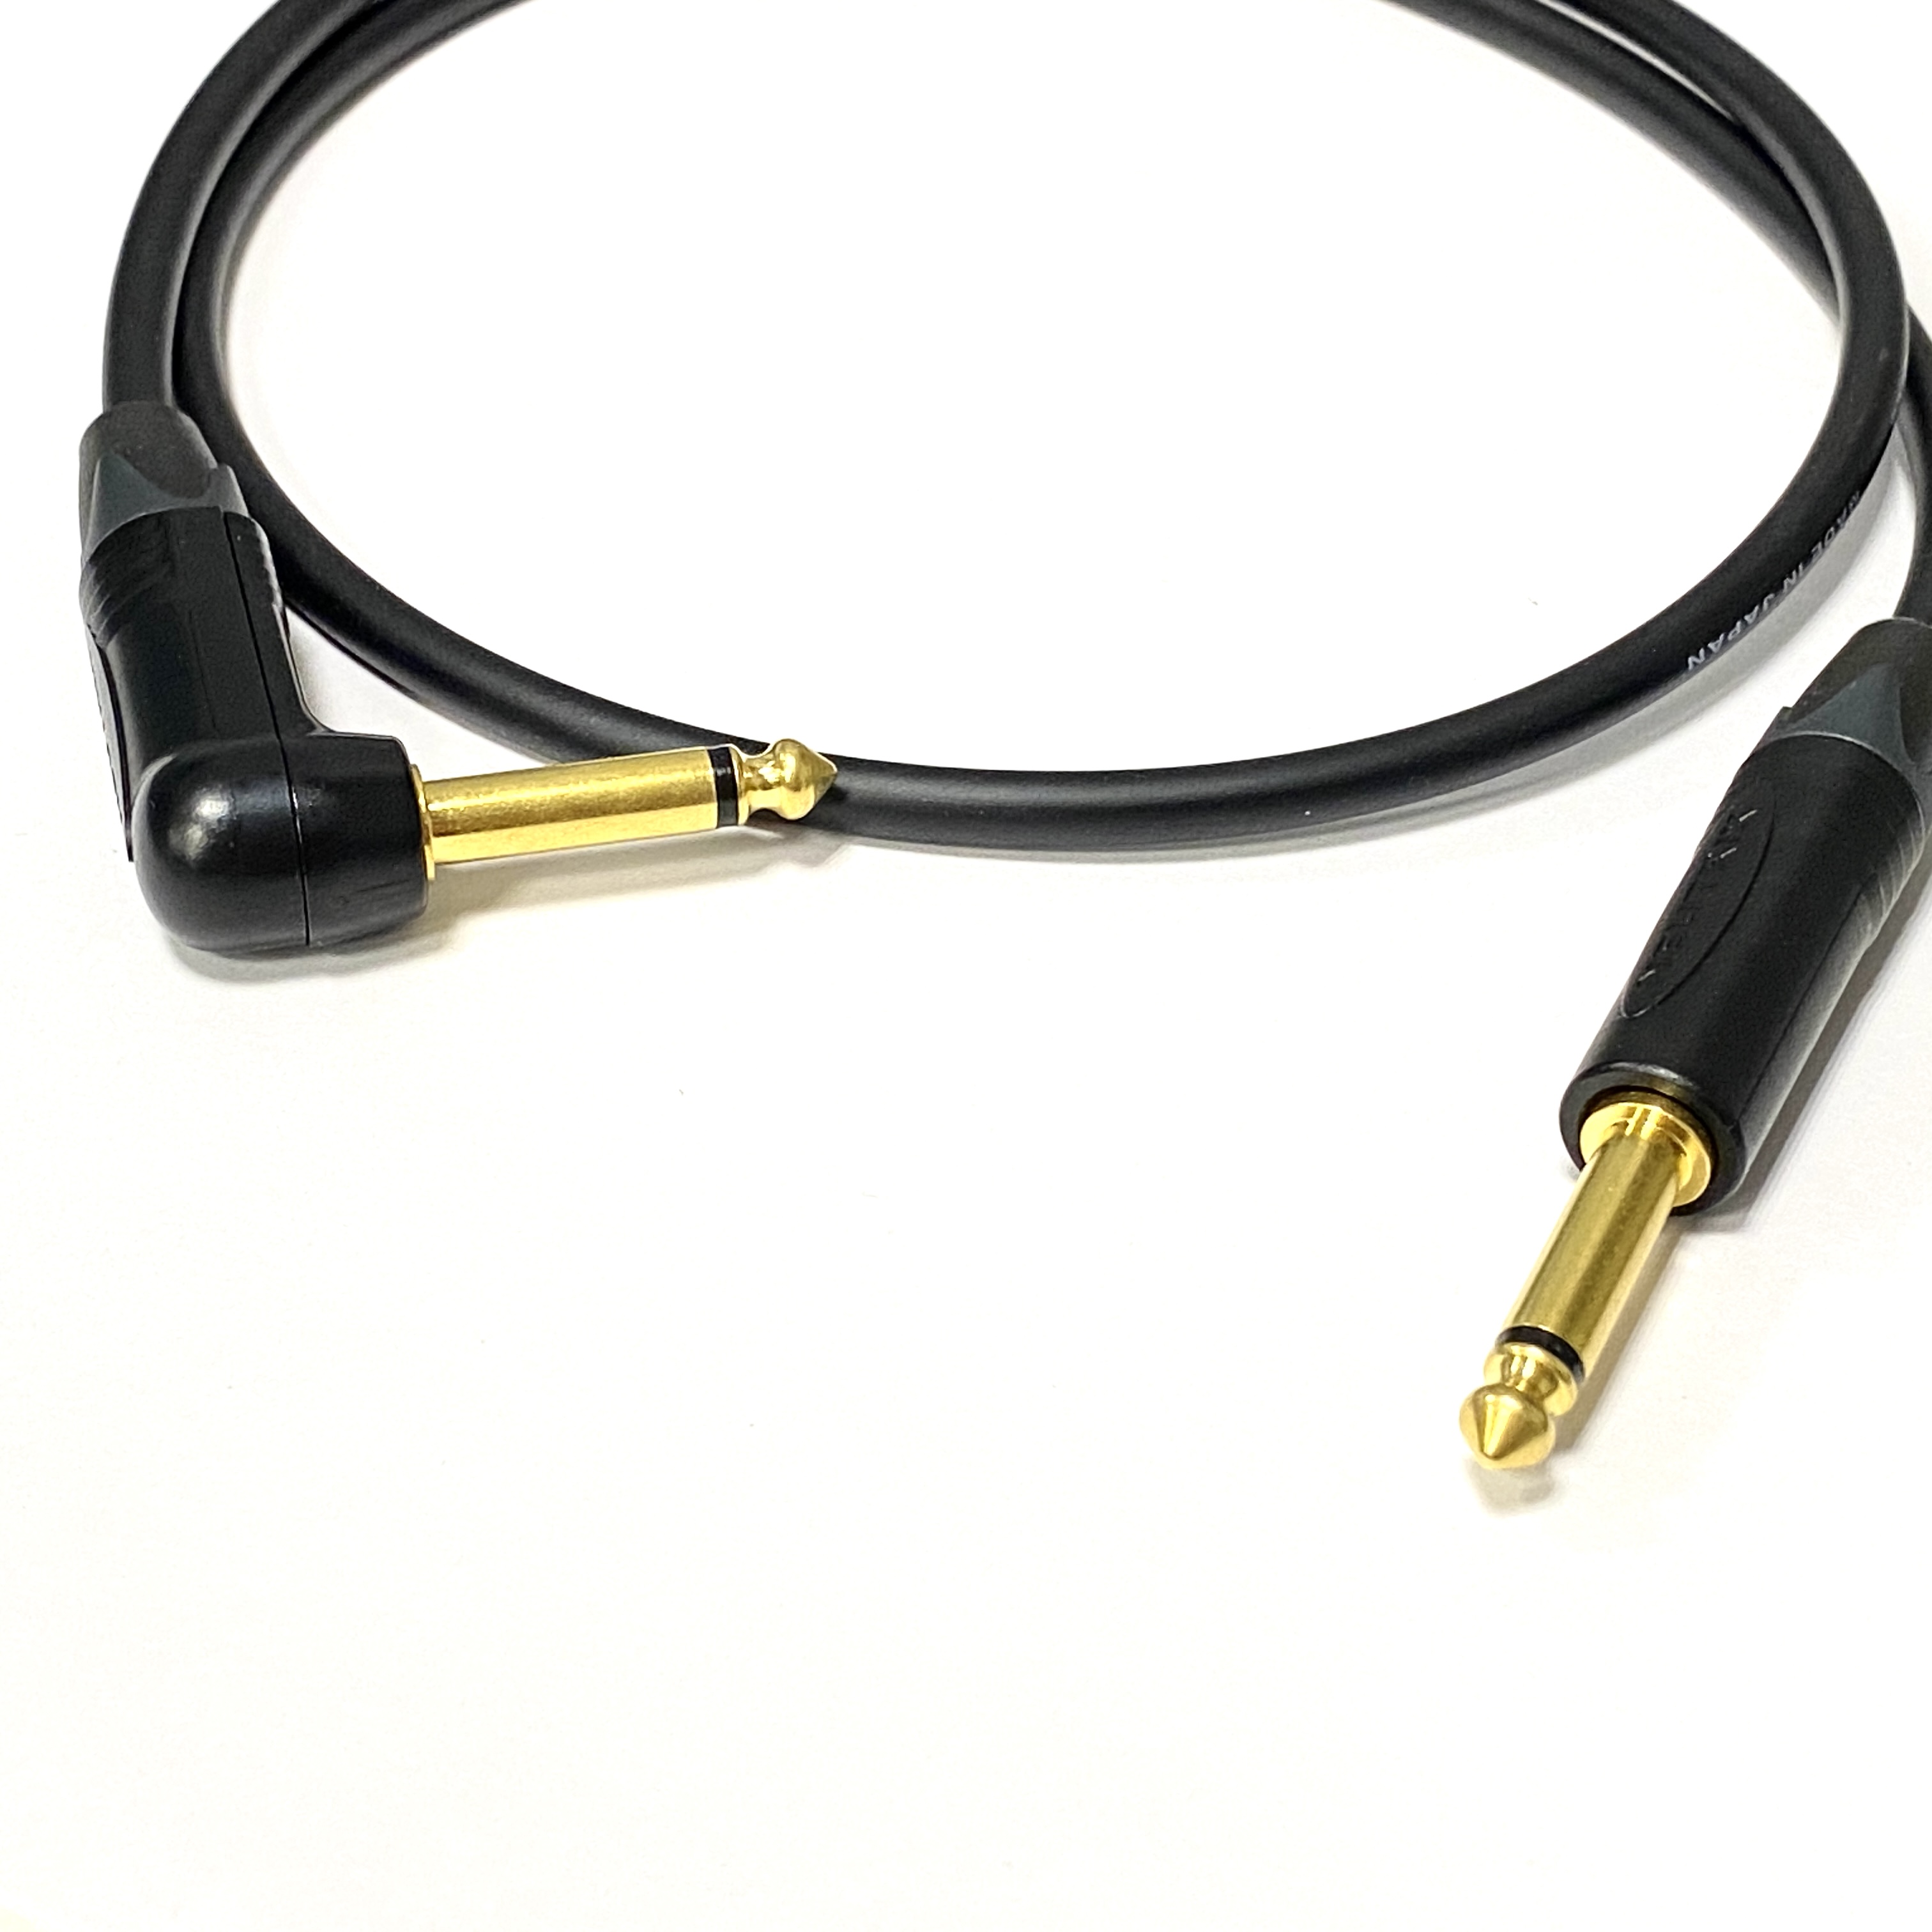 2м профессиональный инструментальный аудио кабель Jack - Jack 6.3 mm mono угловой 1 ст Neutrik GOLD Jack - Jack 6.3 mm mono угловые 1 ст.